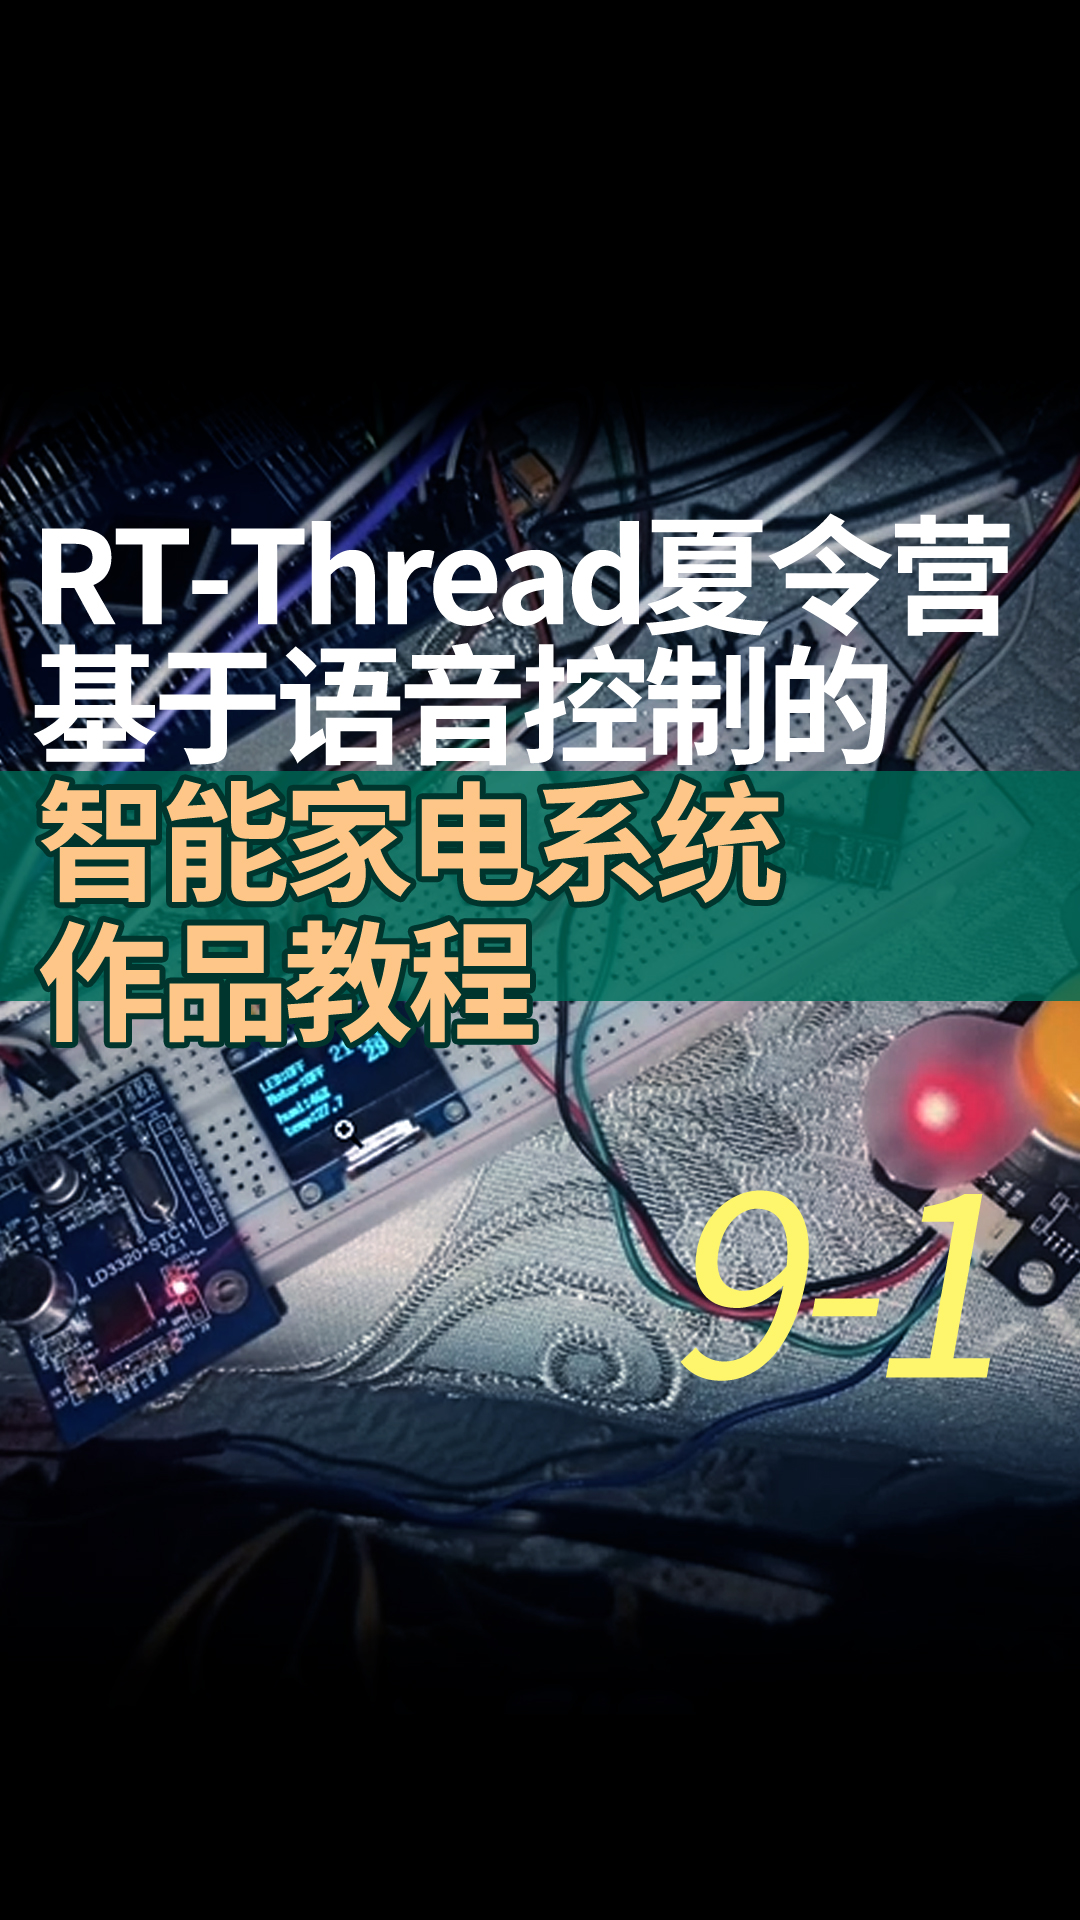 RT-Thread夏令营基于语音控制的智能家电系统作品教程9-1U8g2软件包的使用